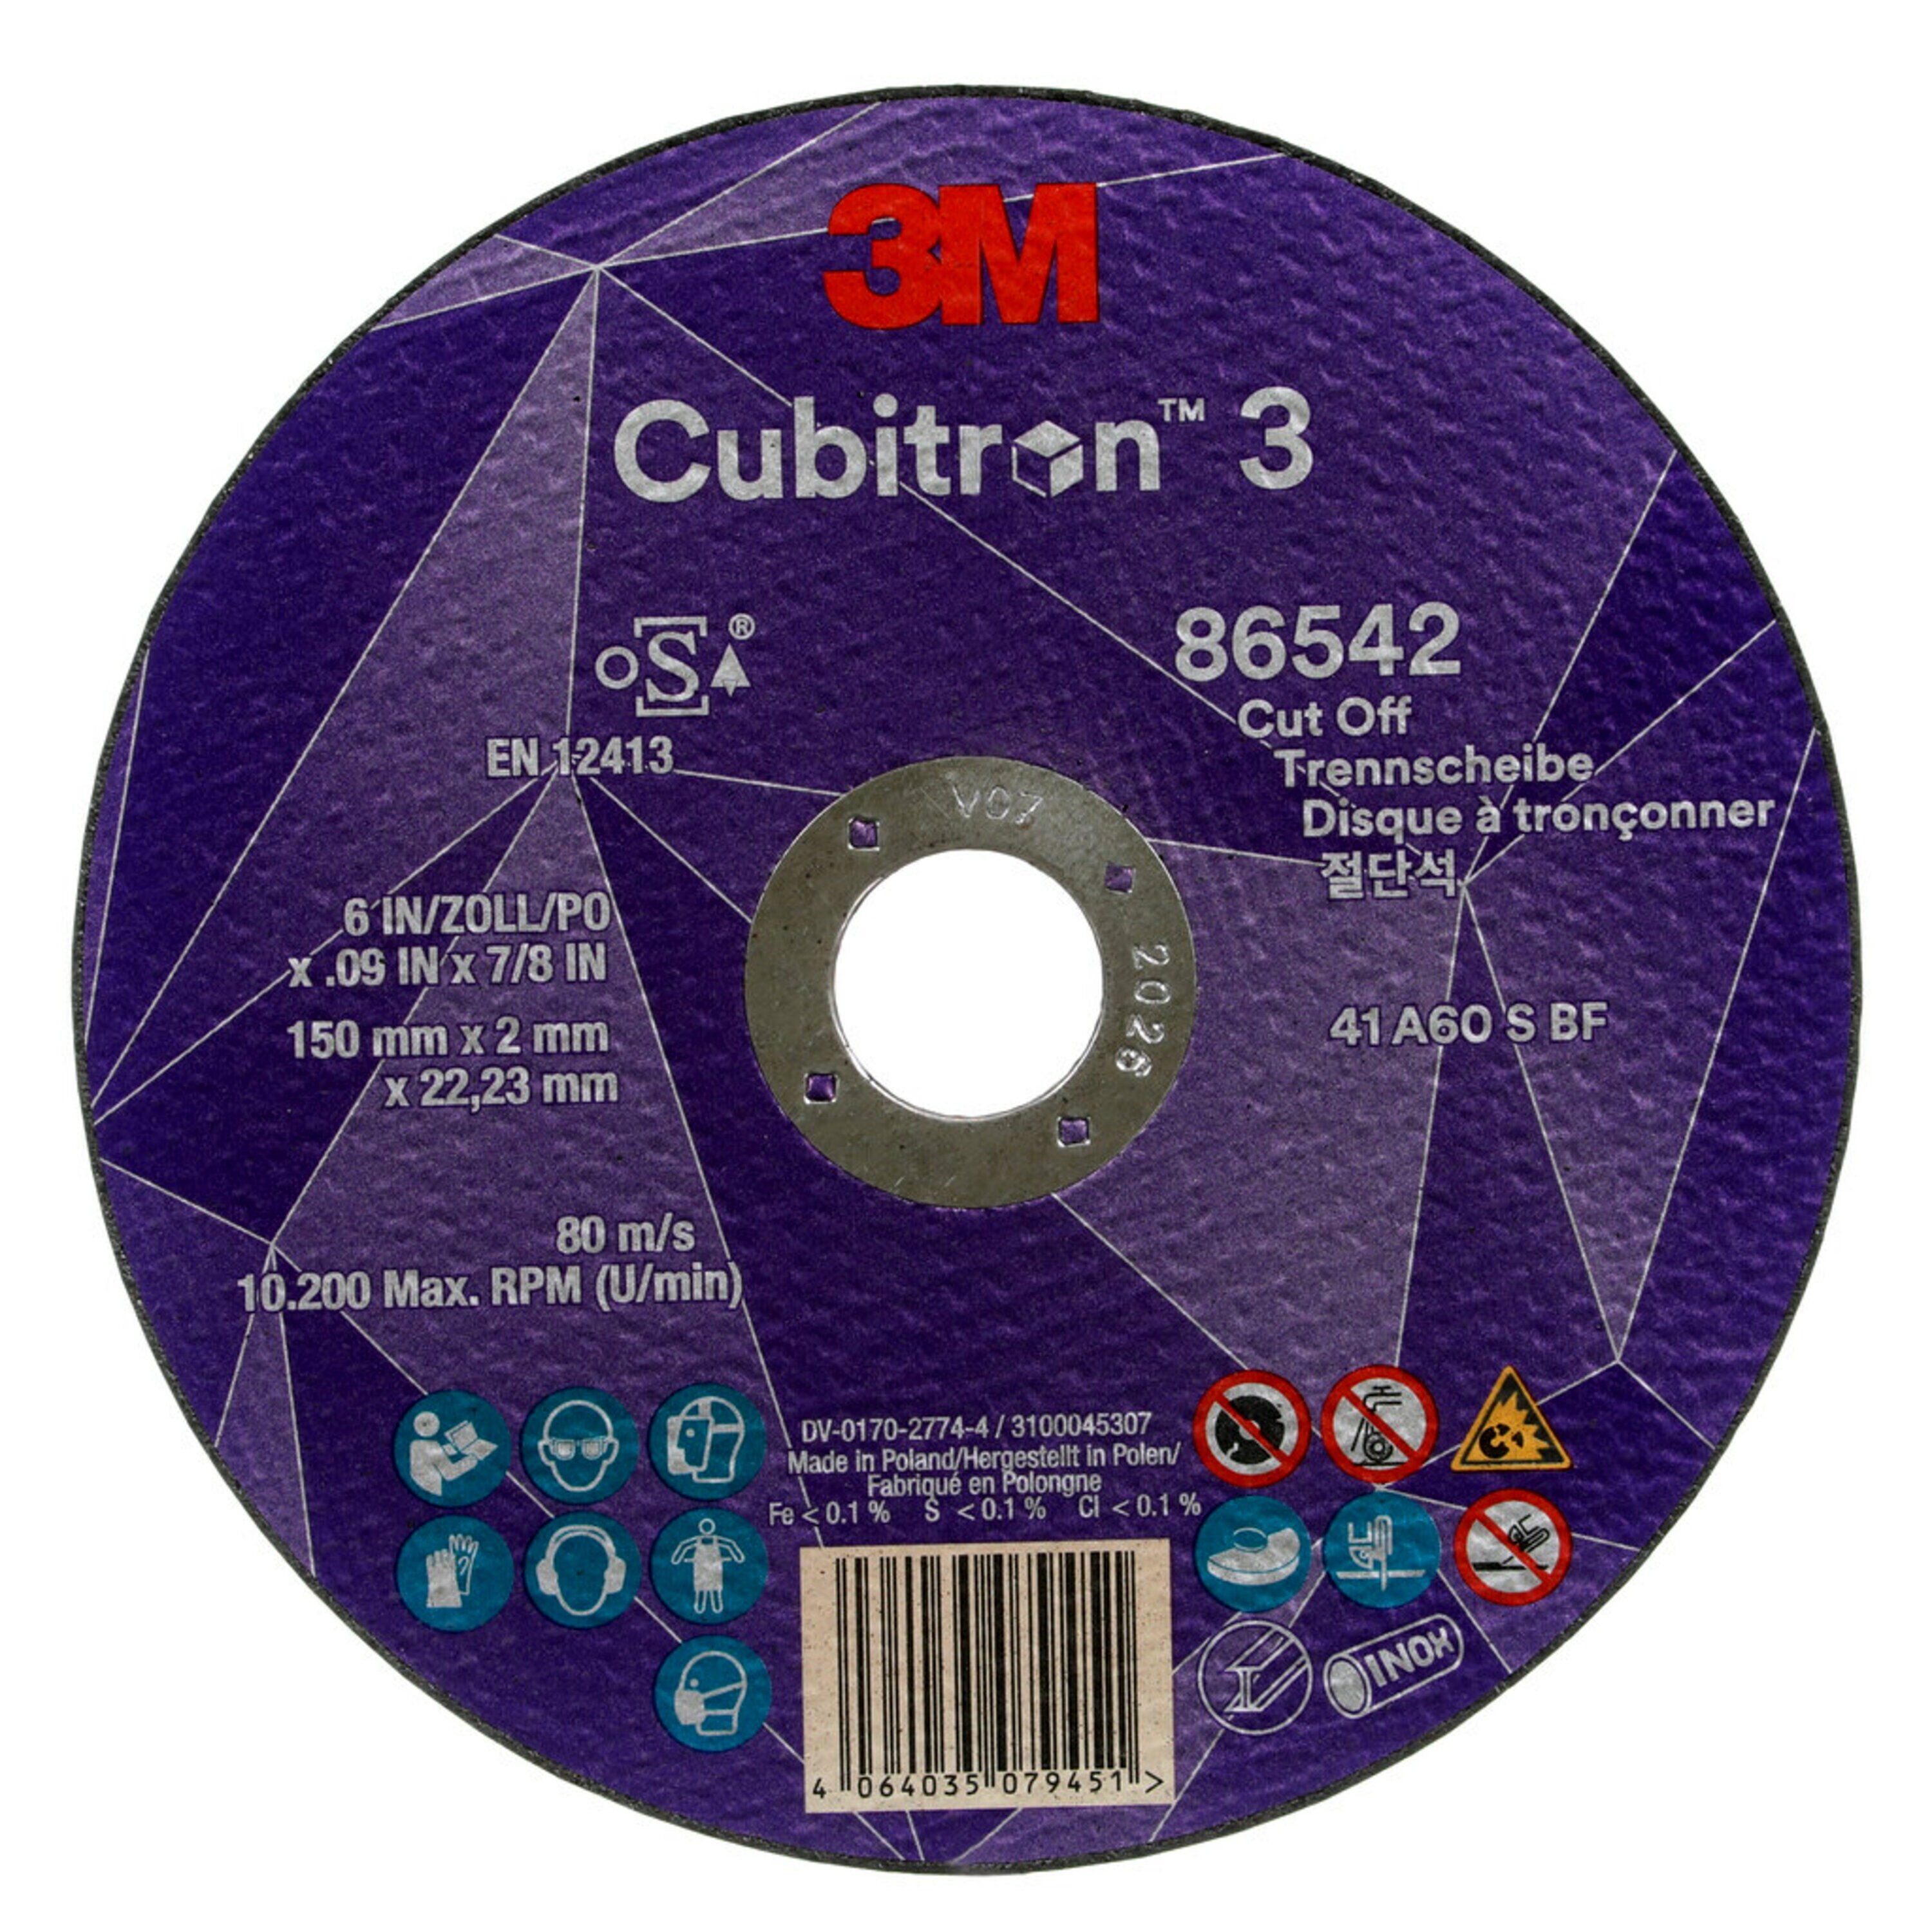 3M Cubitron 3 Disque à tronçonner, 150 mm, 2 mm, 22,23 mm, 60 , type 41 #86542